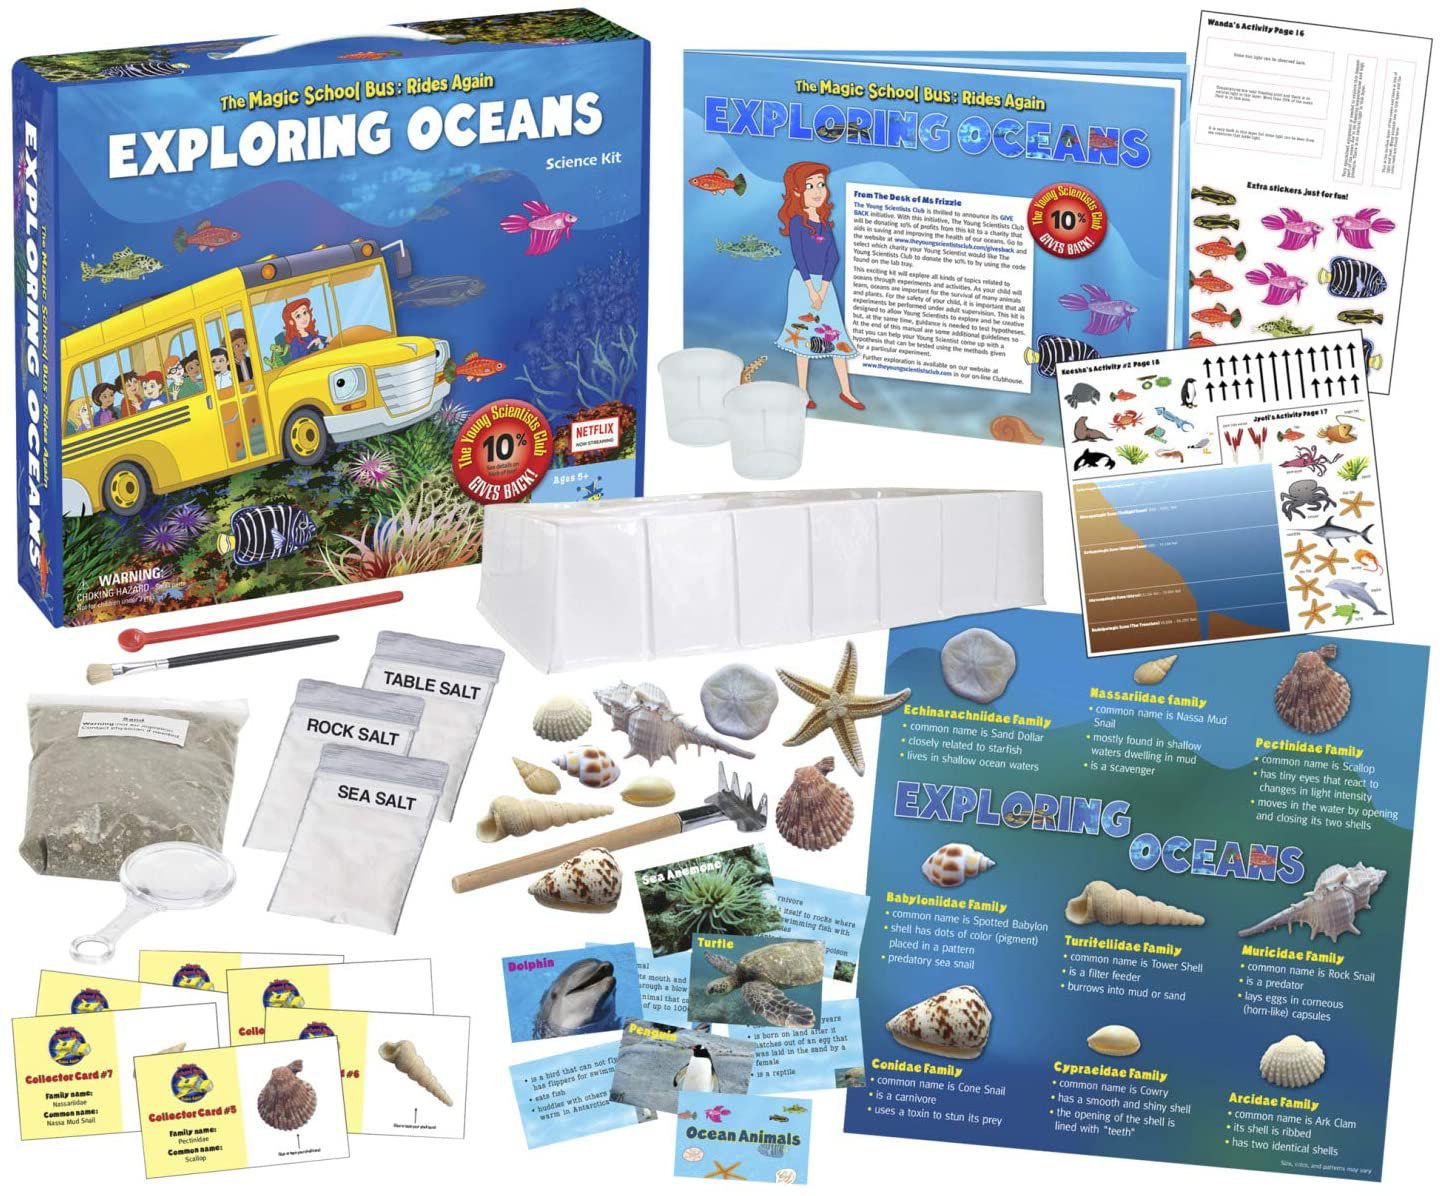 The Magic School Bus: Exploring Oceans